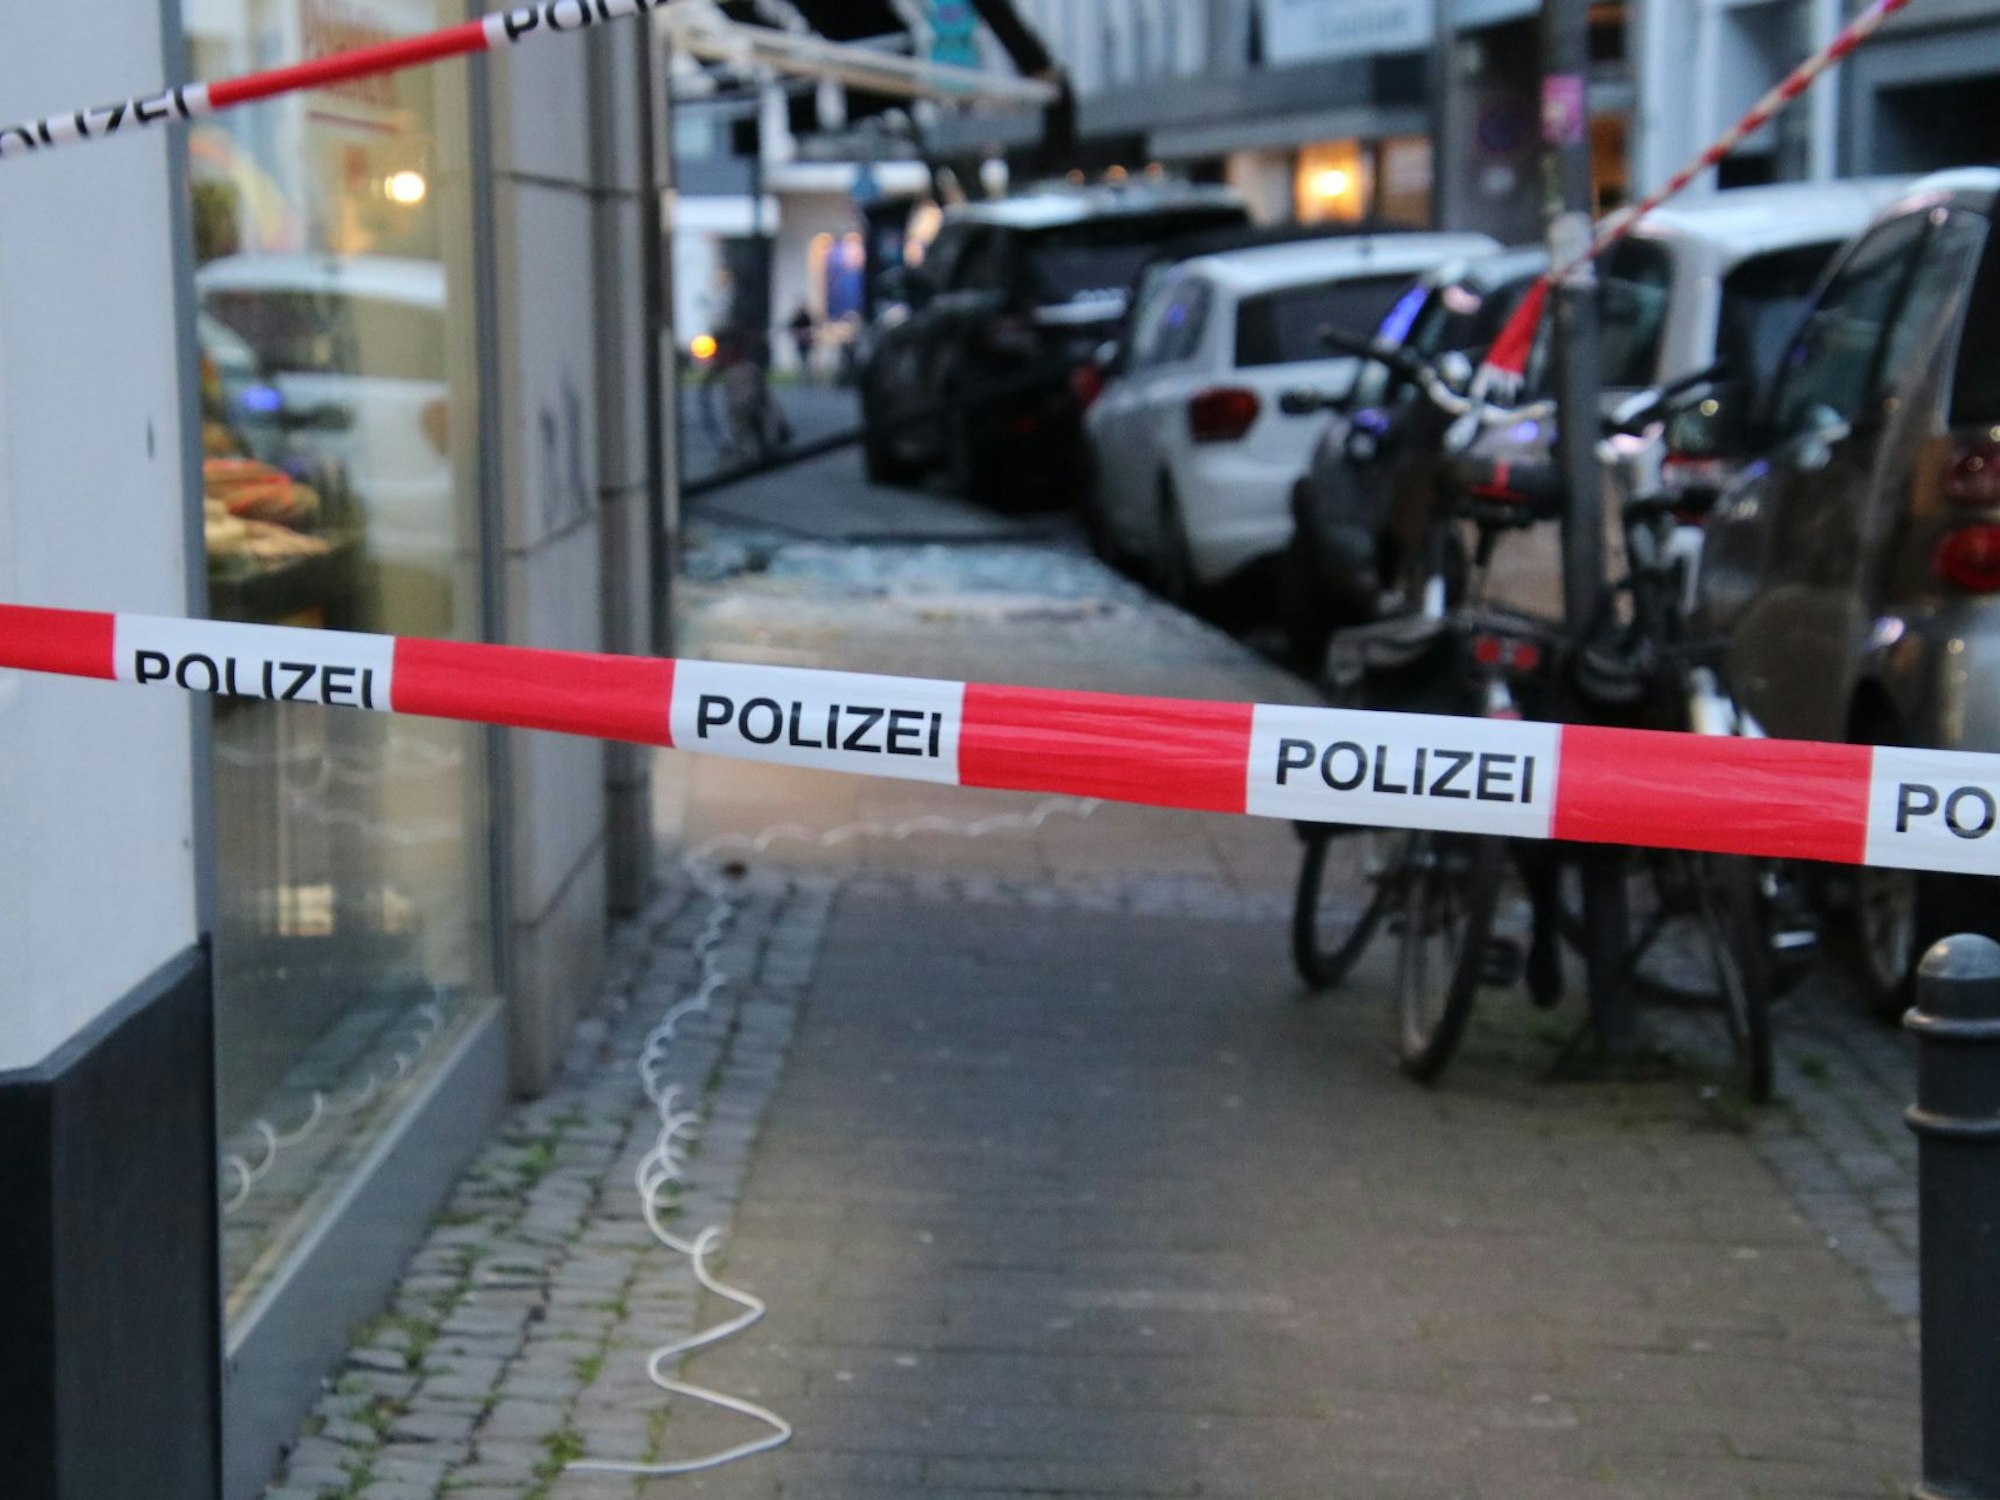 Der Eingangsbereich des Juweliergeschäfts „Cologne Watch“ in der Benisisstraße wurde gesprengt. Auf dem Boden liegt ein weißes Kabel.